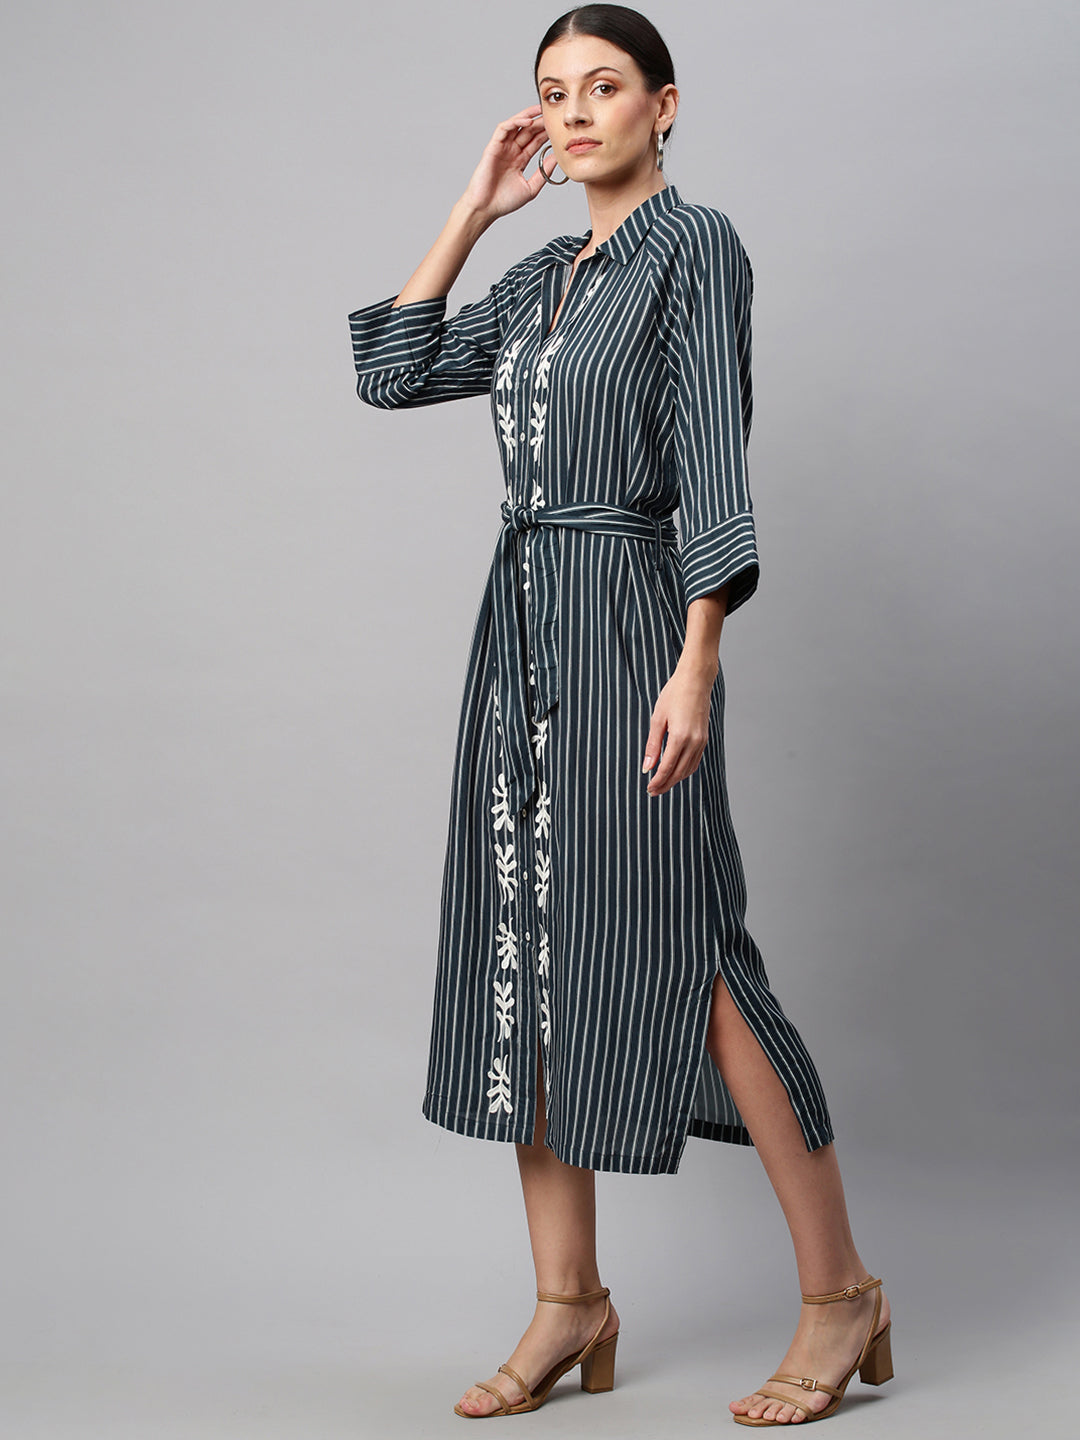 Printed Stripe Rayon Embroidered Raglan Sleeve Shirt Dress